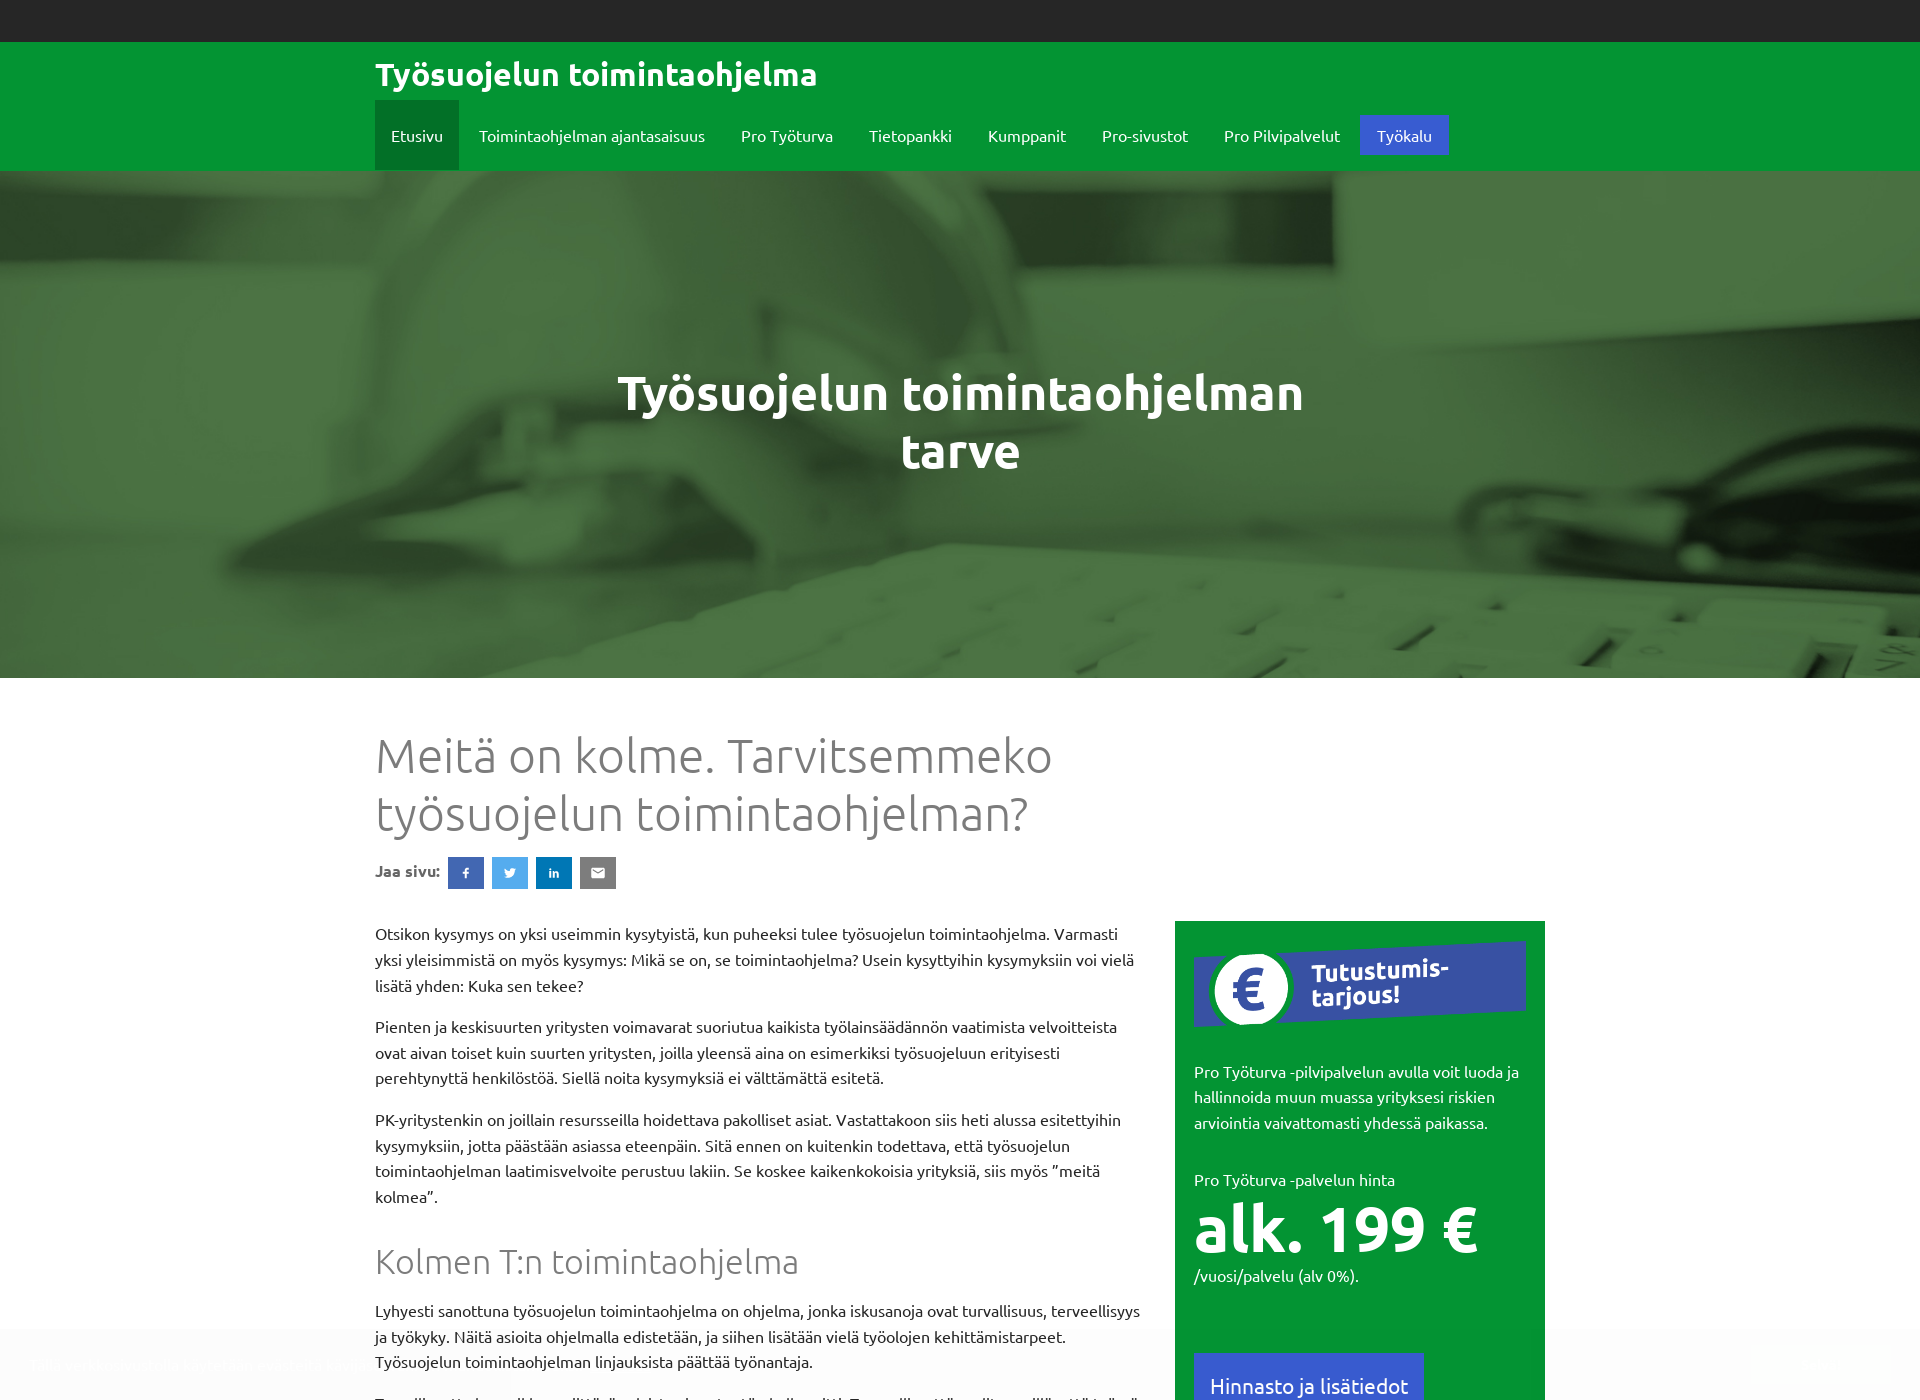 Näyttökuva tyosuojeluntoimintaohjelma.fi